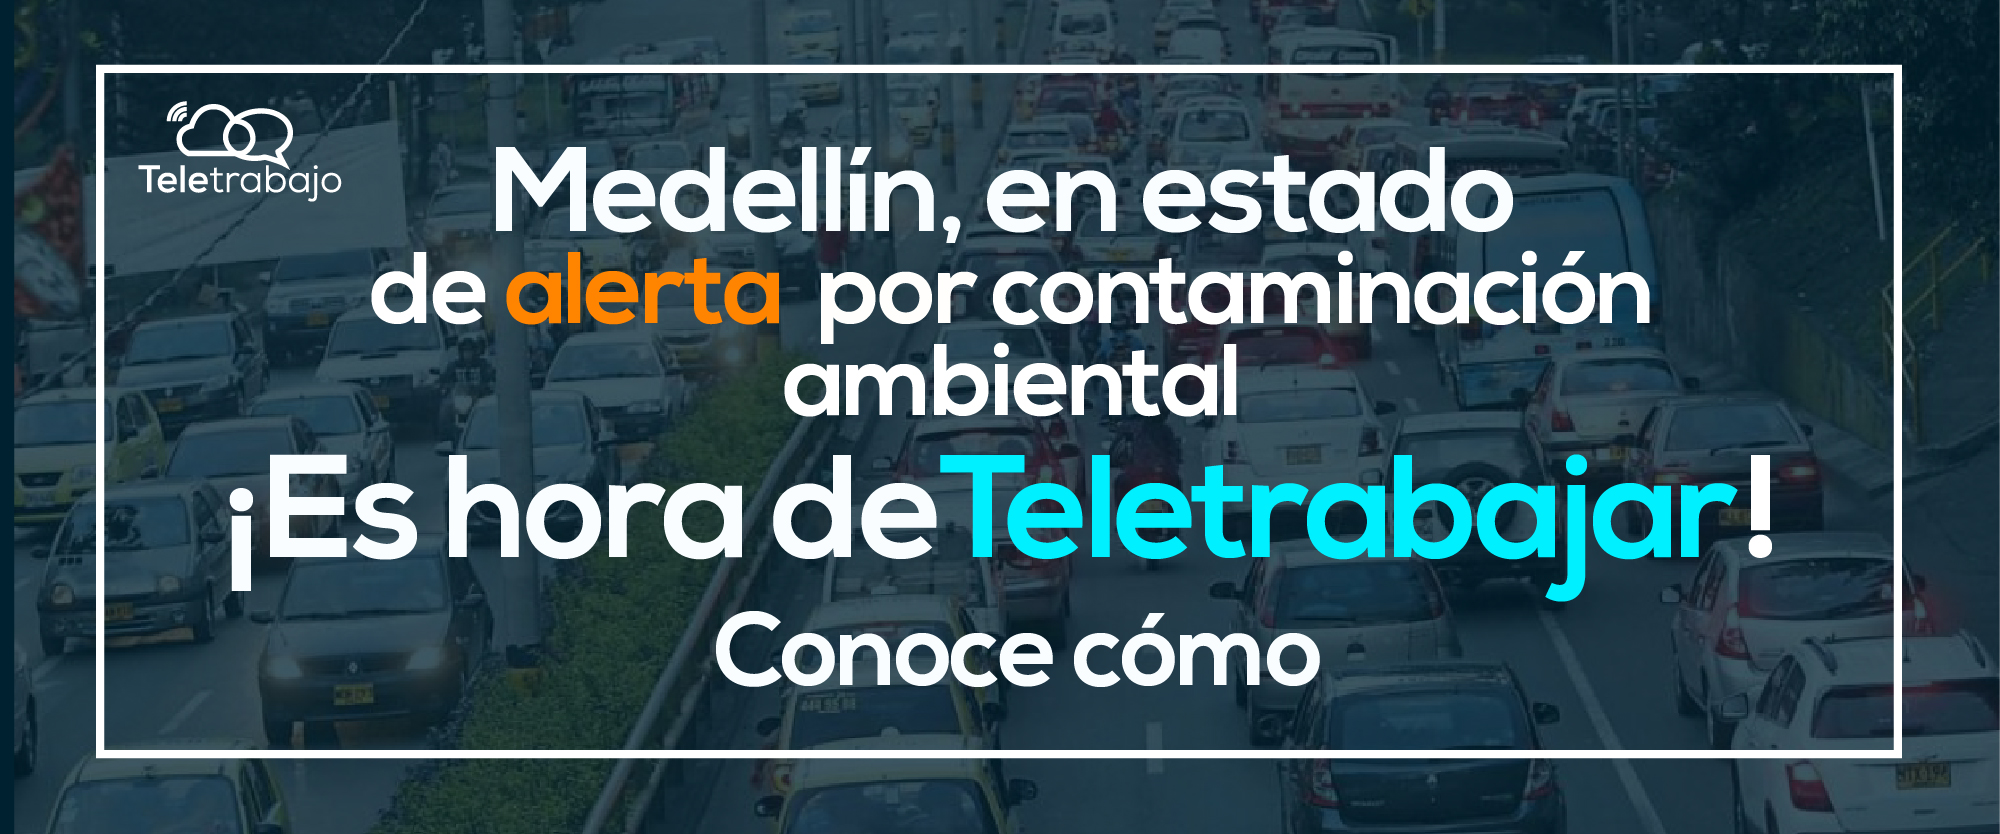 Teletrabajo, una alternativa para mejorar calidad del aire en Medellín